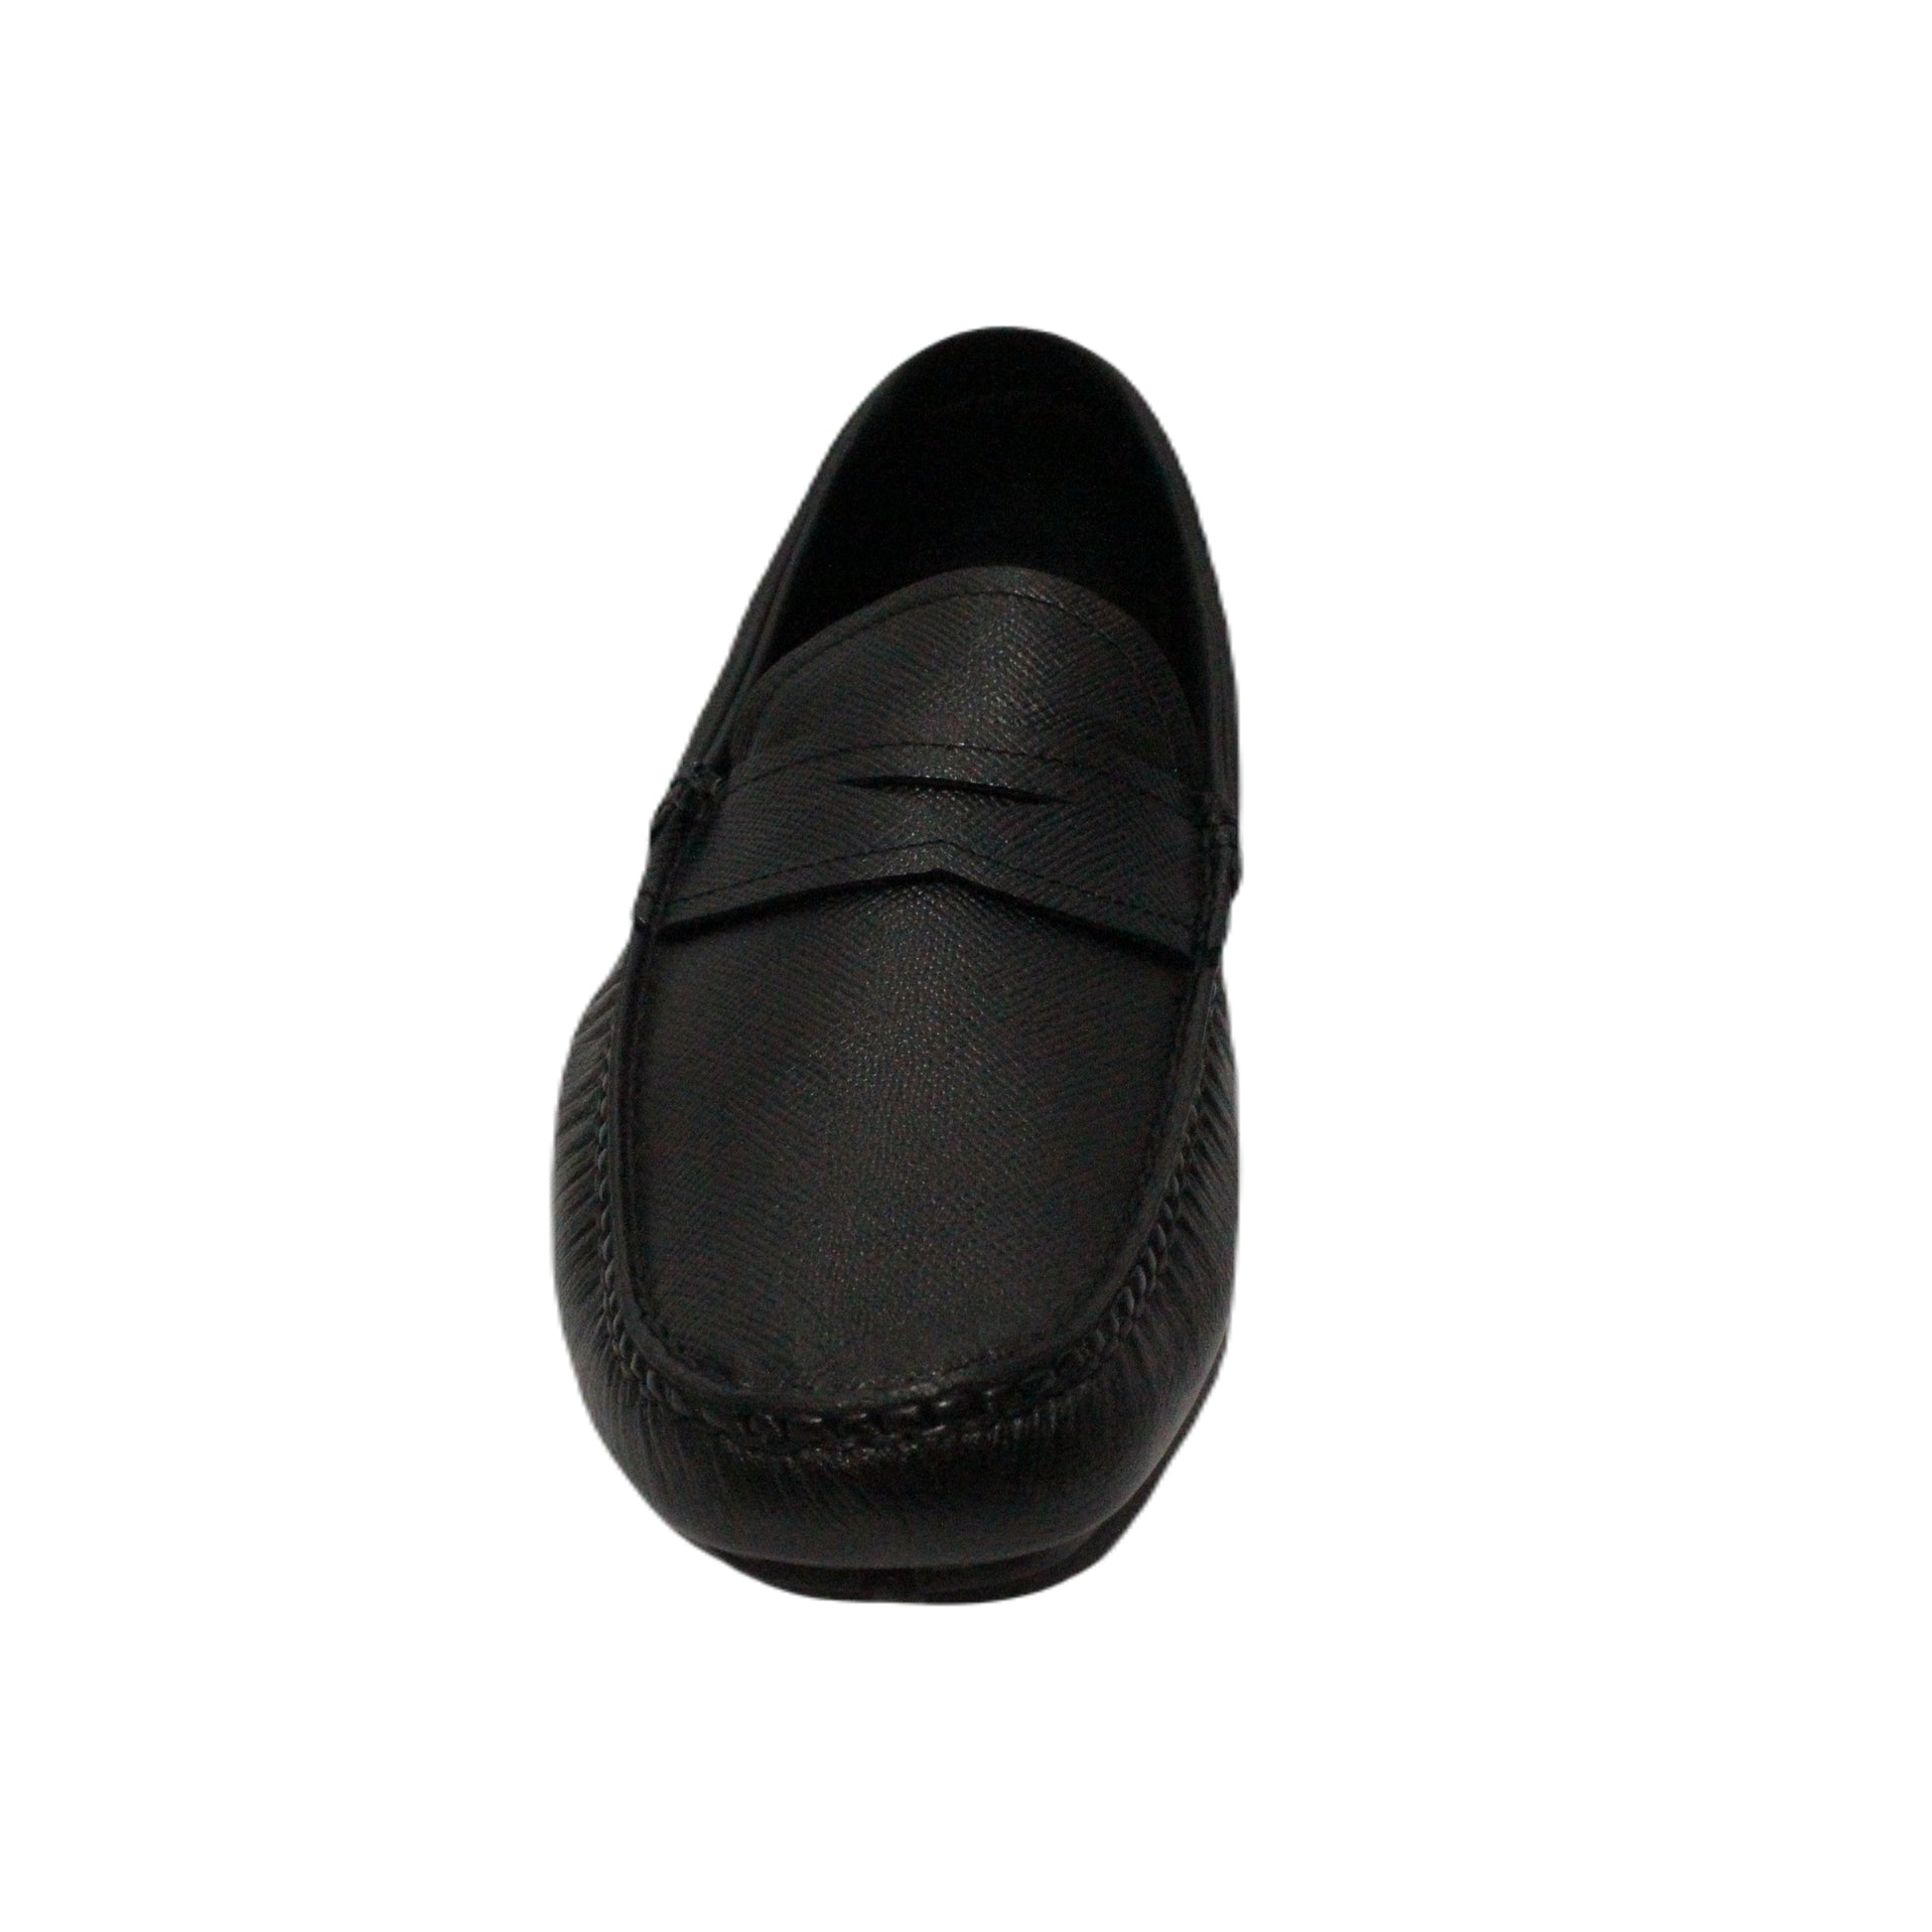 Vito Oliva B3262.56 Prada Loafers - Blk/Prada - Escape Menswear